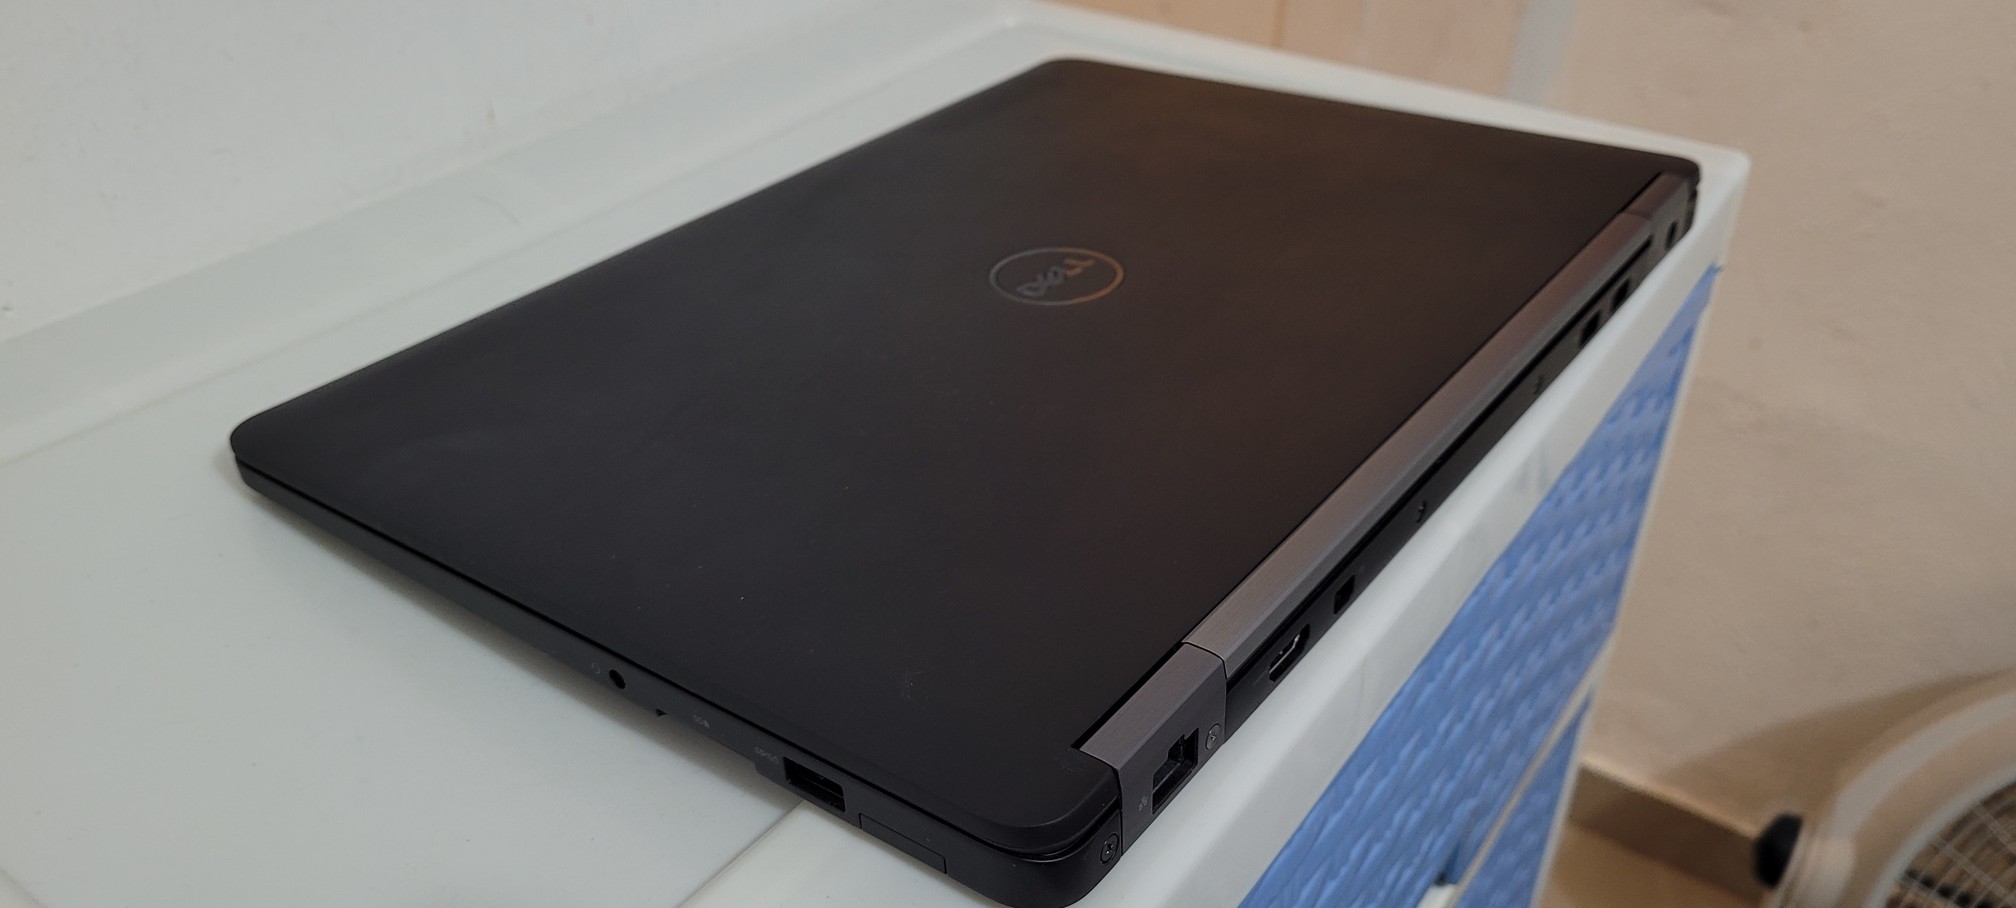 computadoras y laptops - Dell 5590 17 Pulg Core i5 8va Gen Ram 16gb ddr4 Disco 512gb SSD Solido 1080p 2